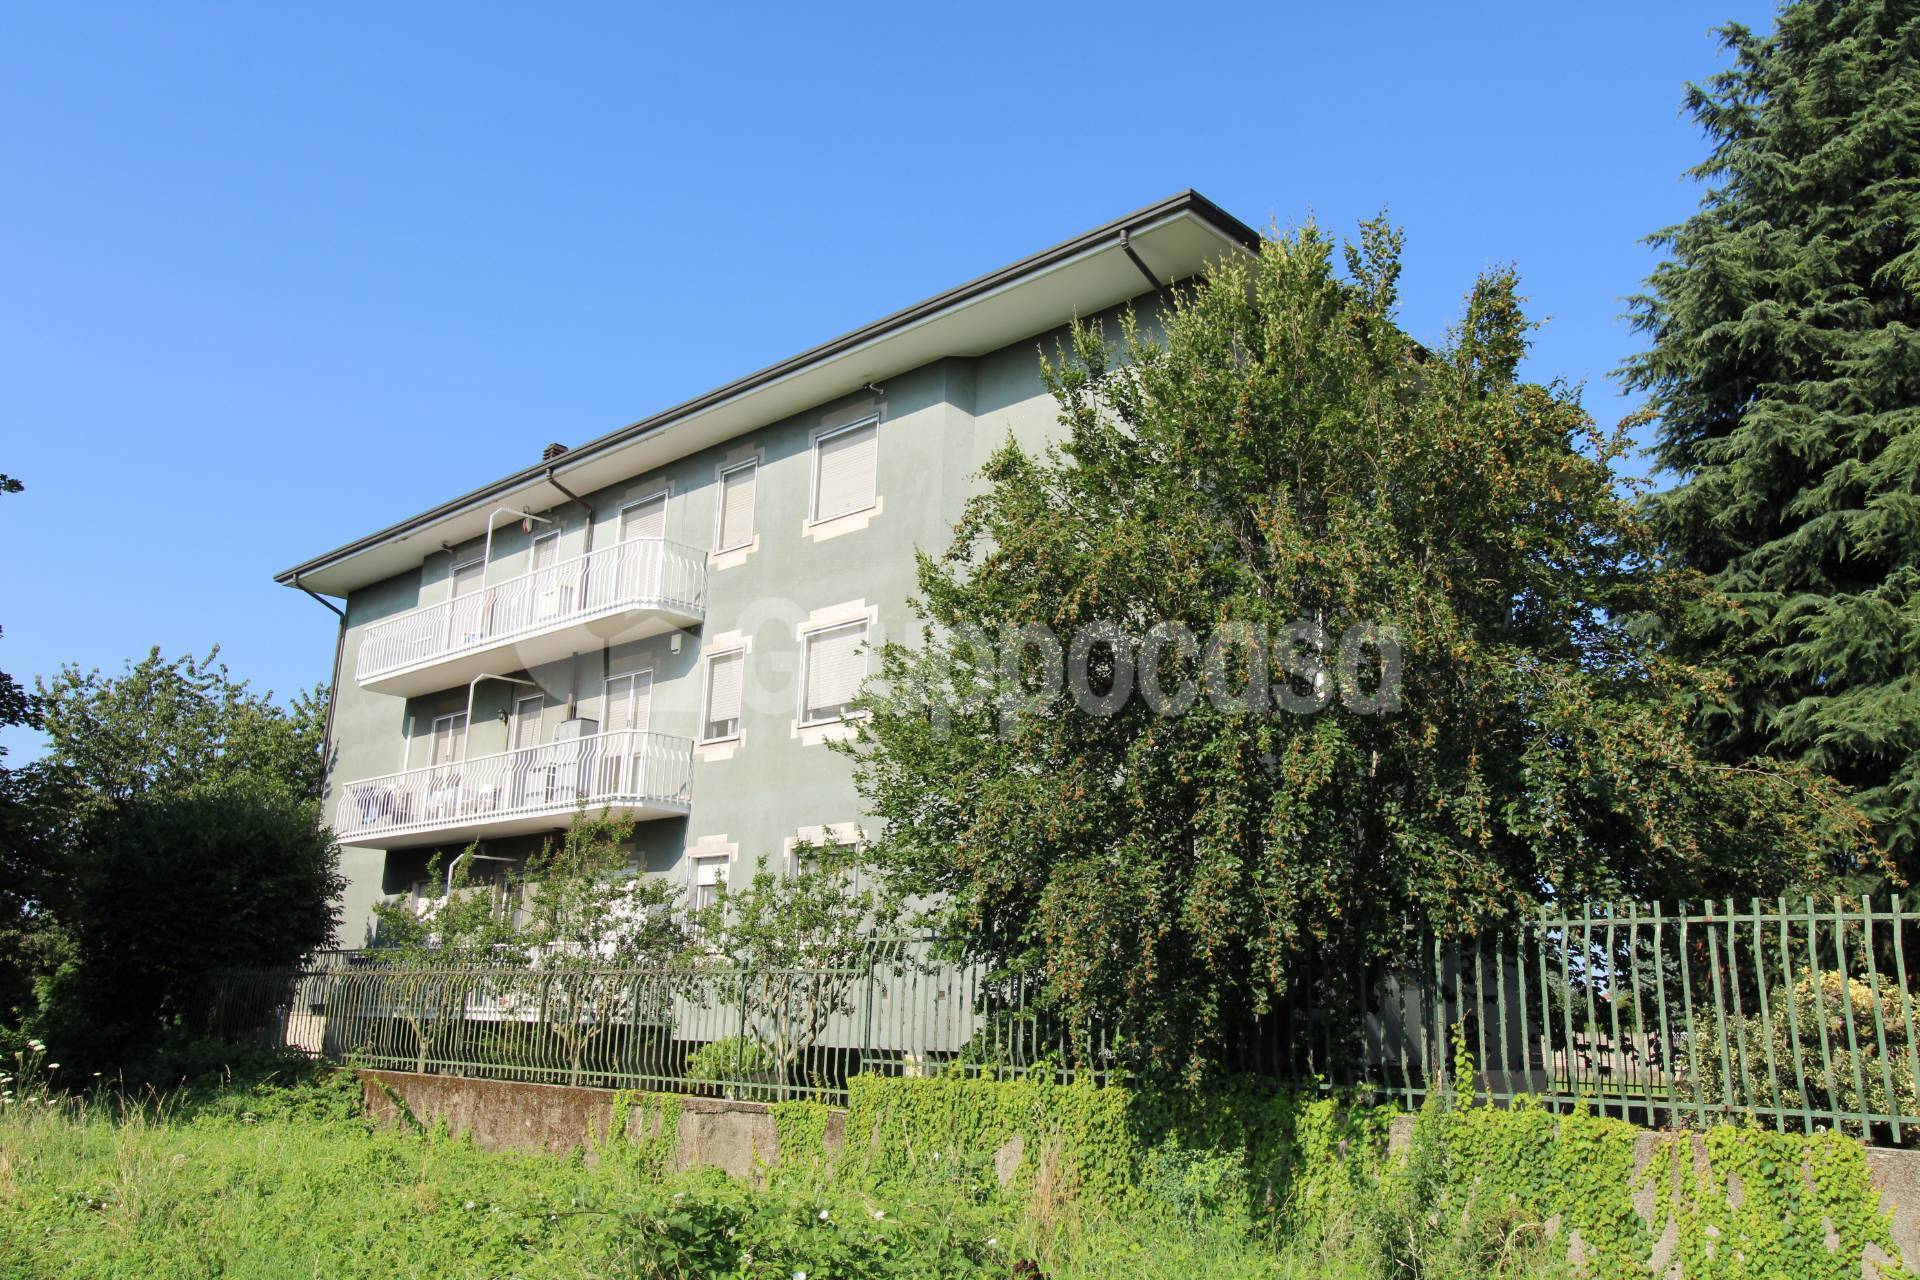 Appartamento in vendita a Rho, 3 locali, zona Zona: Terrazzano, prezzo € 150.000 | CambioCasa.it